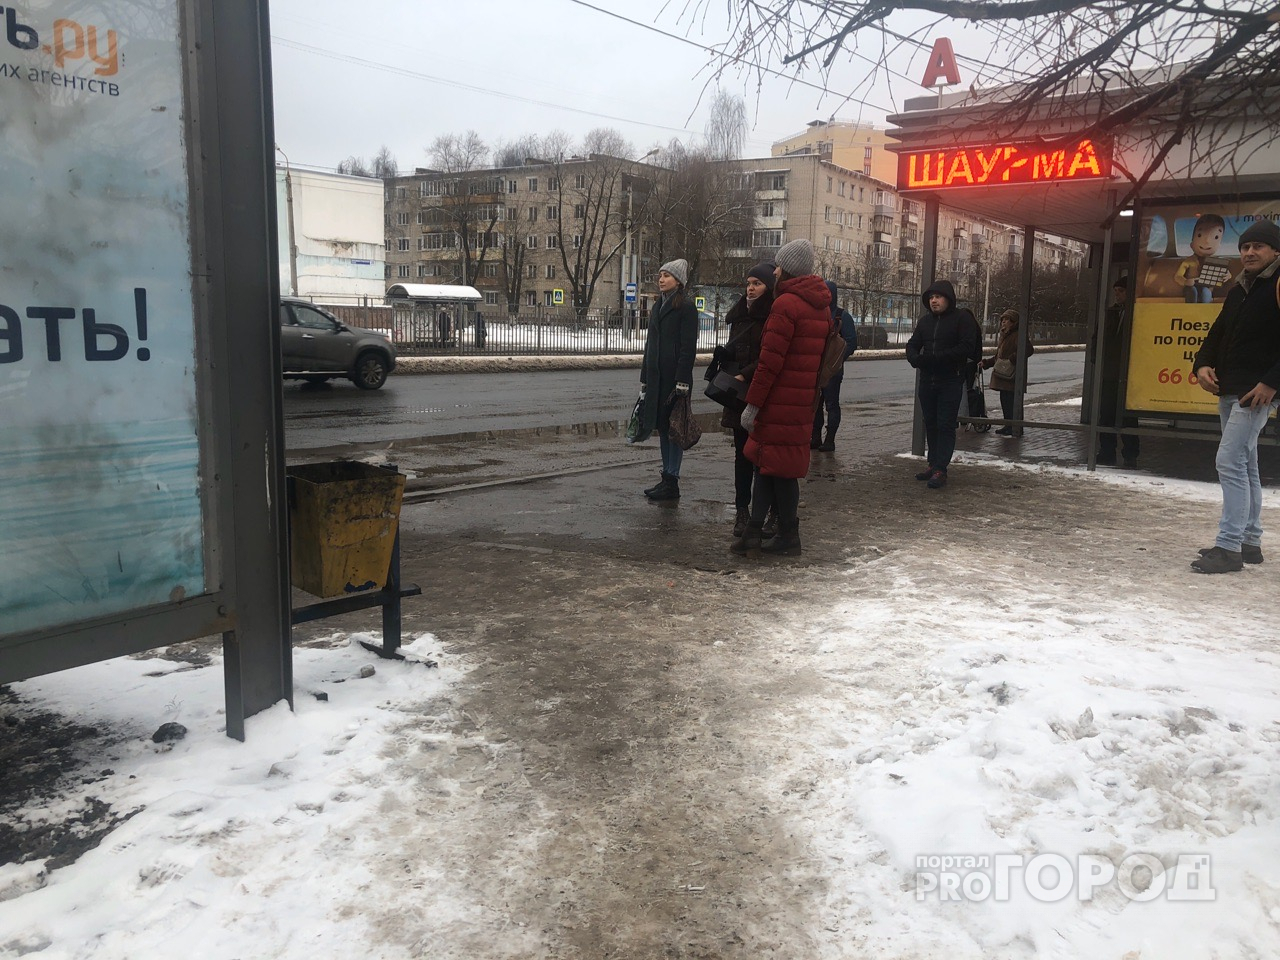 "Сговор перевозчиков": куда делись маршрутки в Ярославле